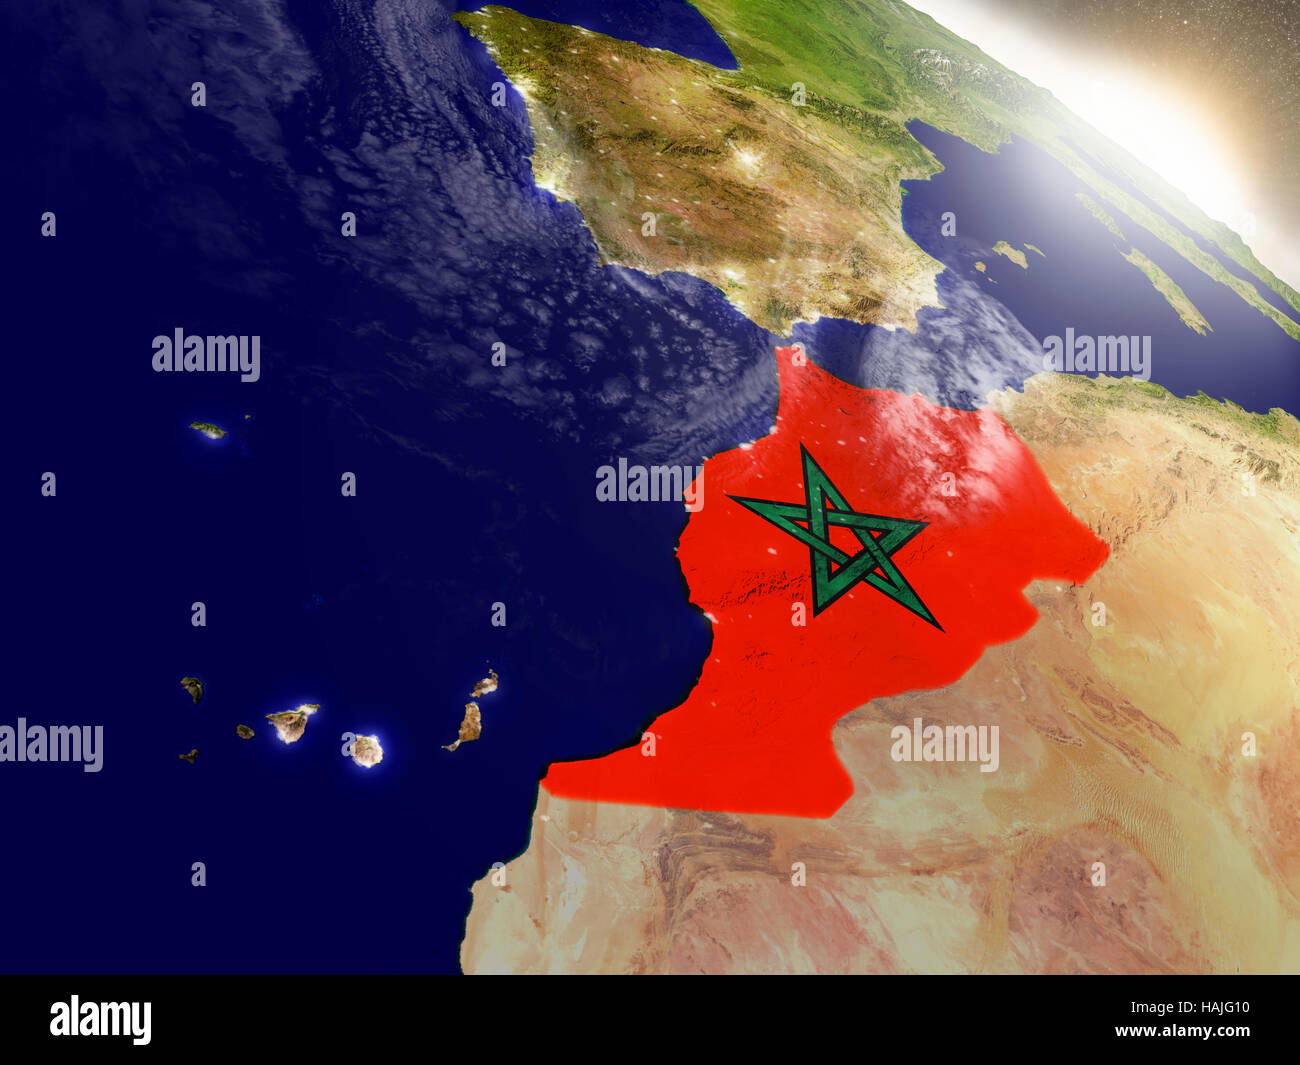 Le Maroc avec des drapeaux sur la surface de la planète pendant le lever du soleil. Illustration 3D réaliste très détaillées avec surface de la planète et visibles de la ville. El Banque D'Images